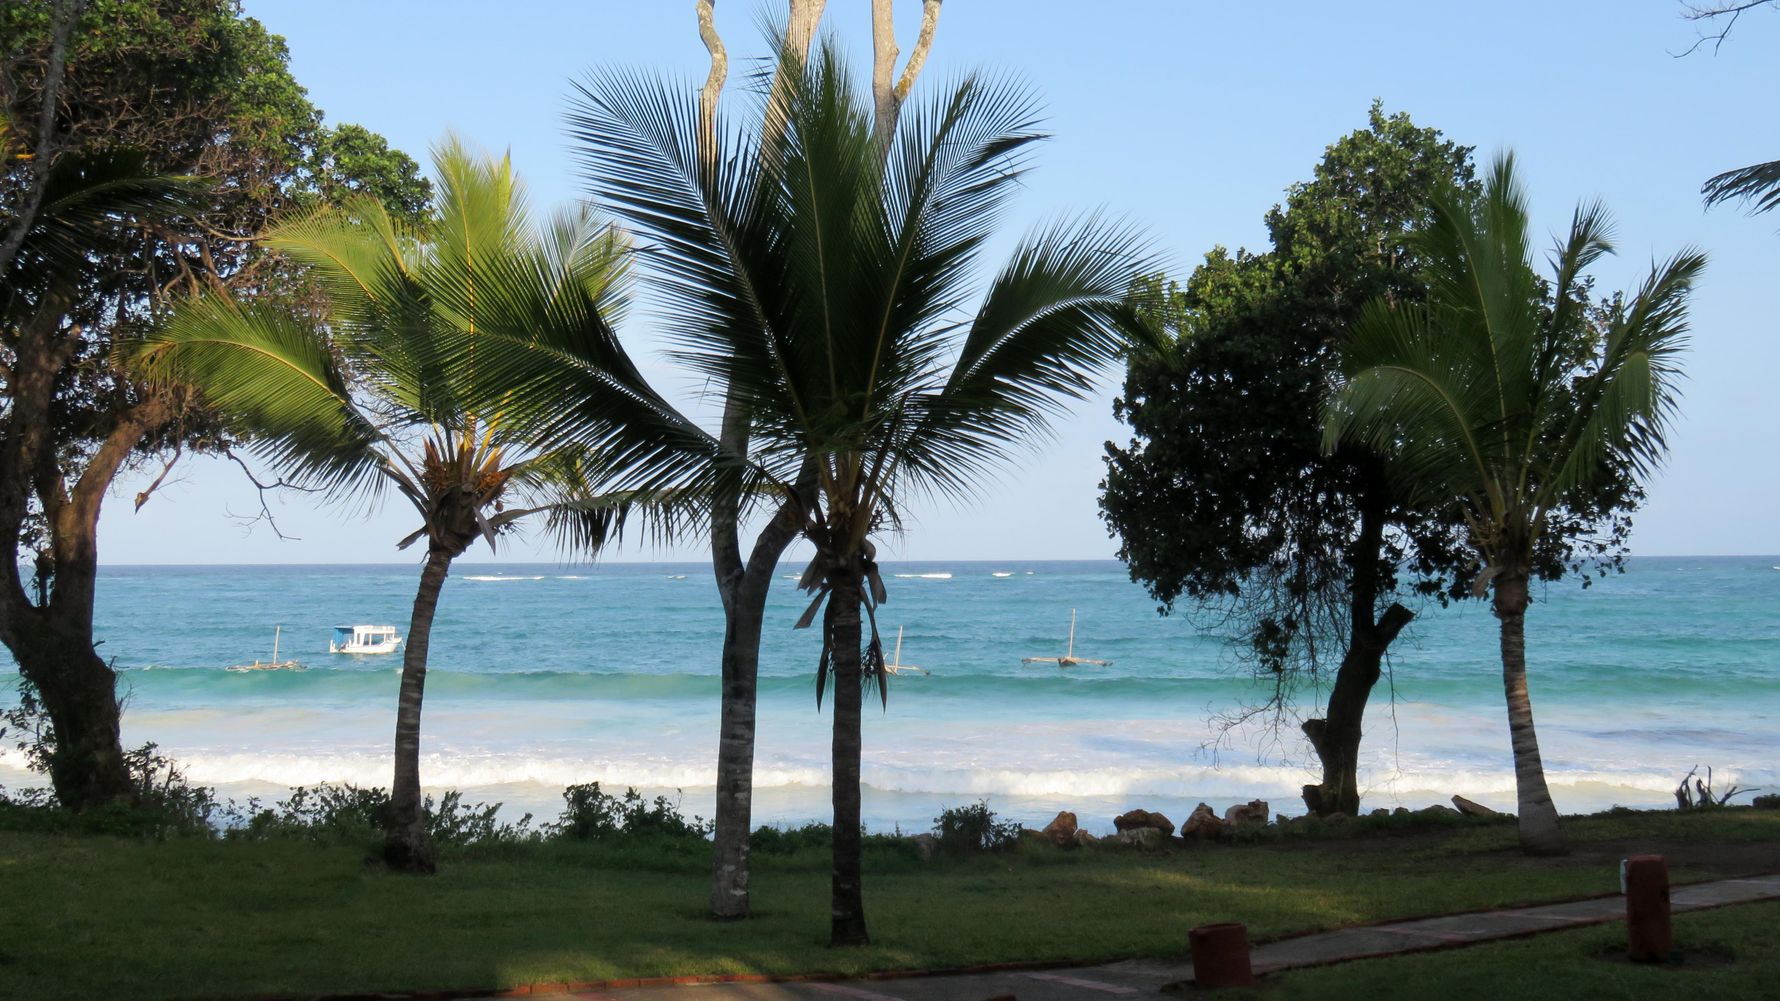 Afrika-Urlaub Ostafrika: Strandszene mit Palmen, Meer und Booten in Kenia am Indischen Ozean